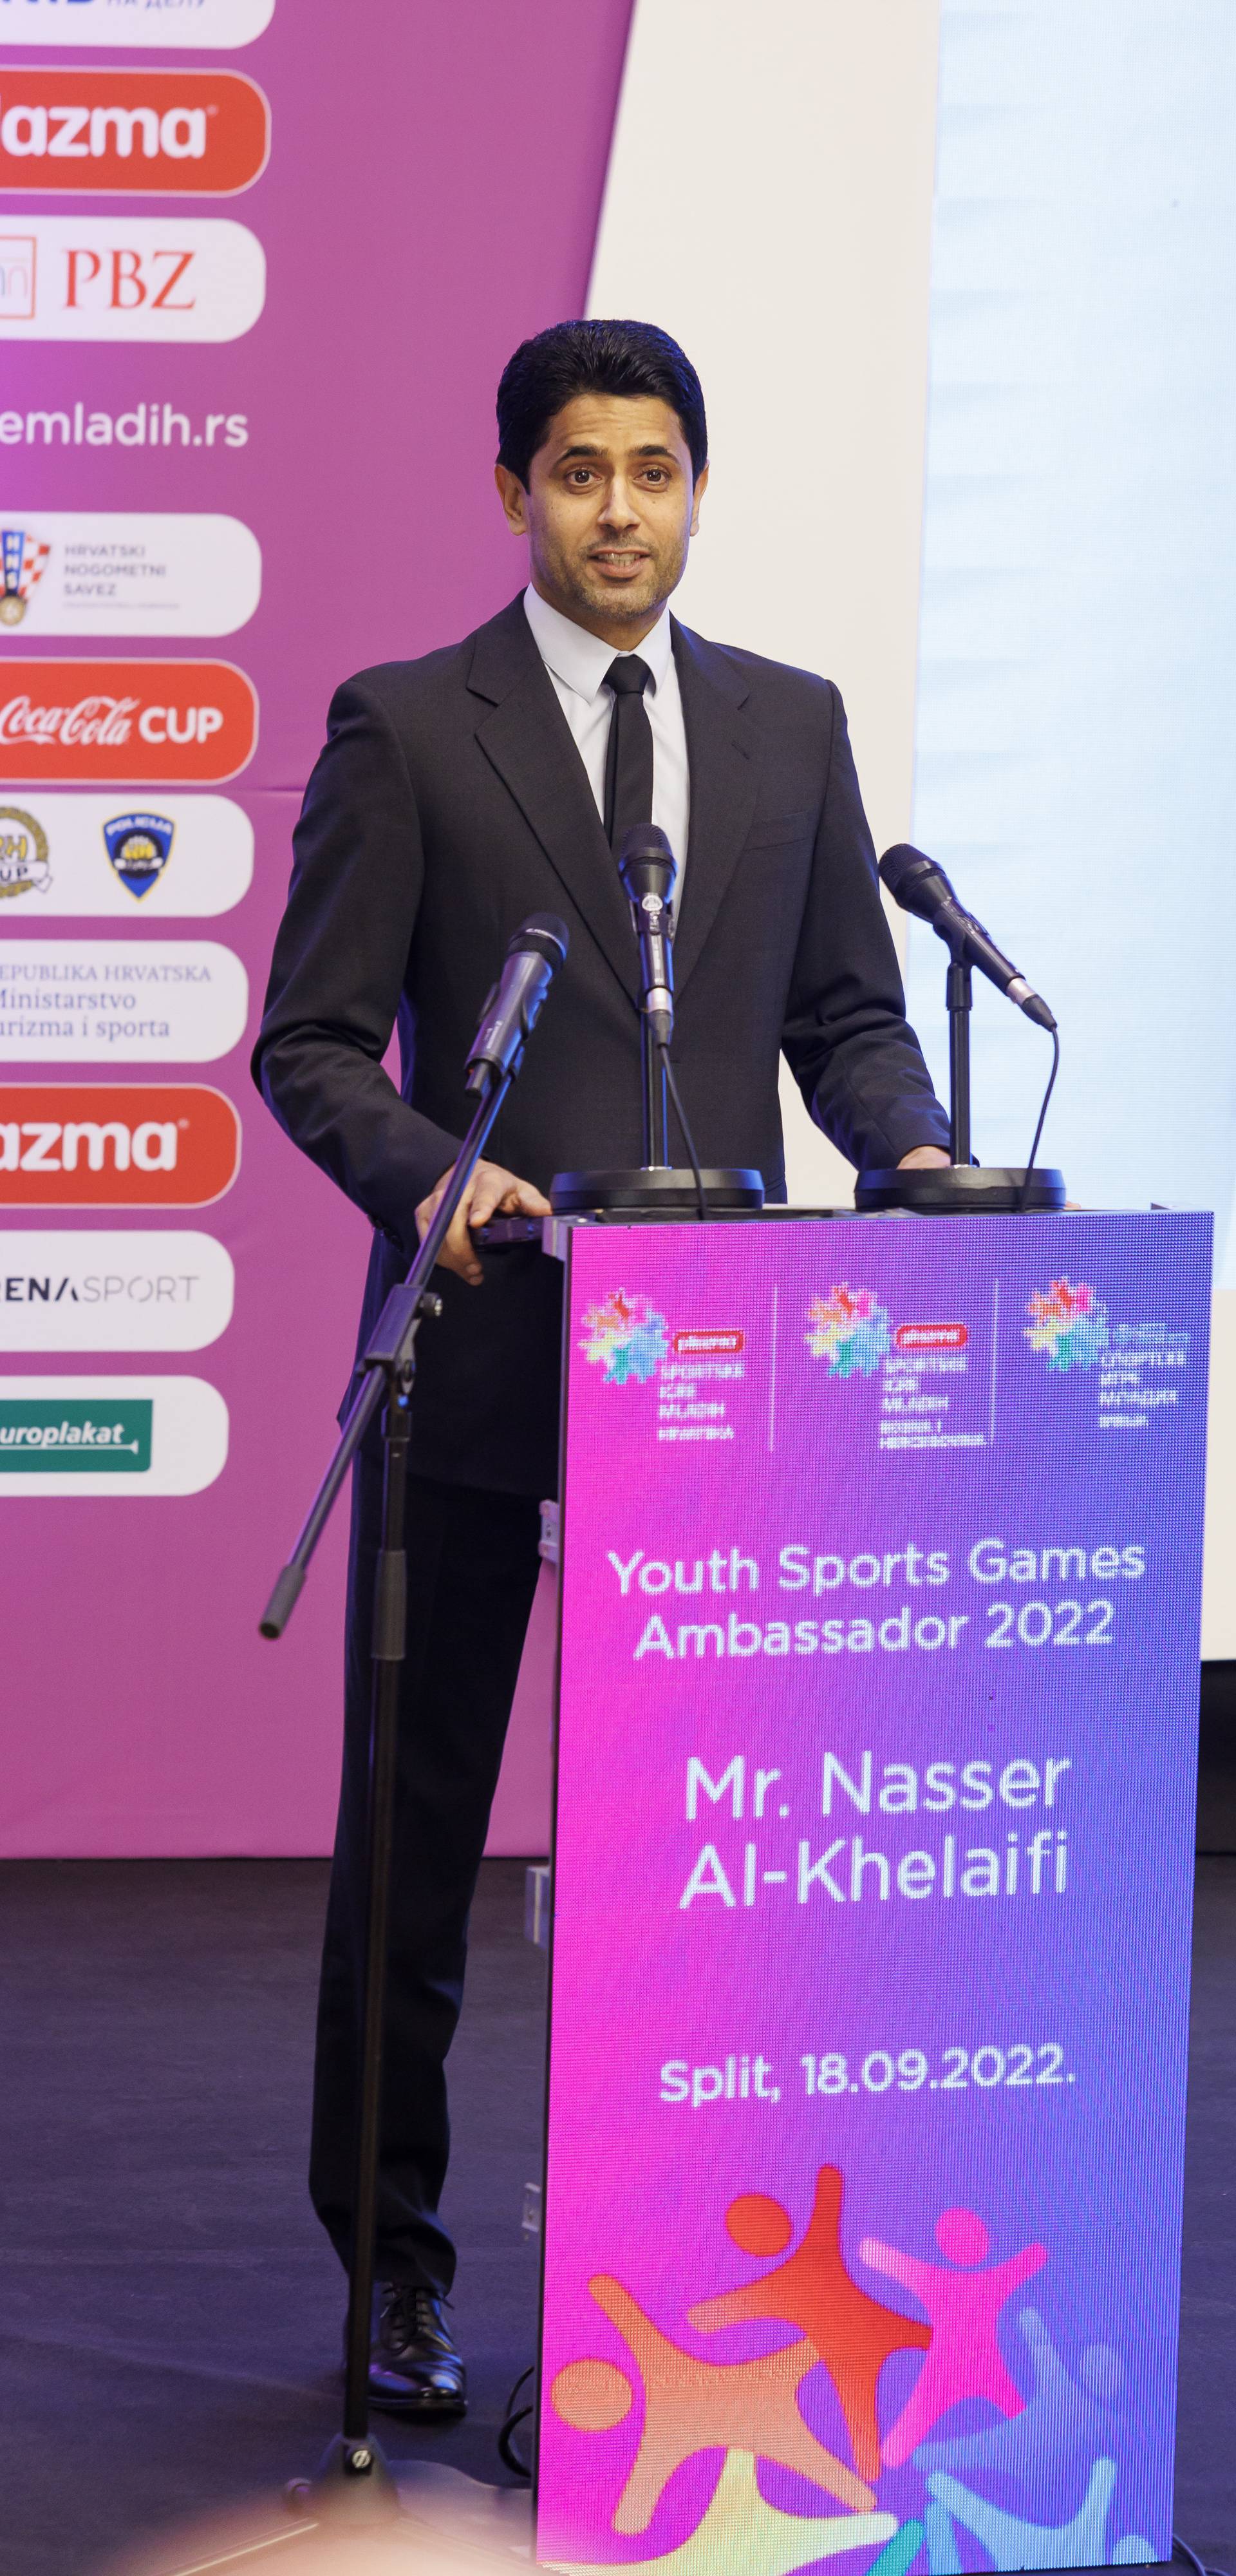 Split: Održana je ceremonija predstavljanja novog ambasadora Plazma Sportskih igara mladih, Nassera Al-Khelaifija